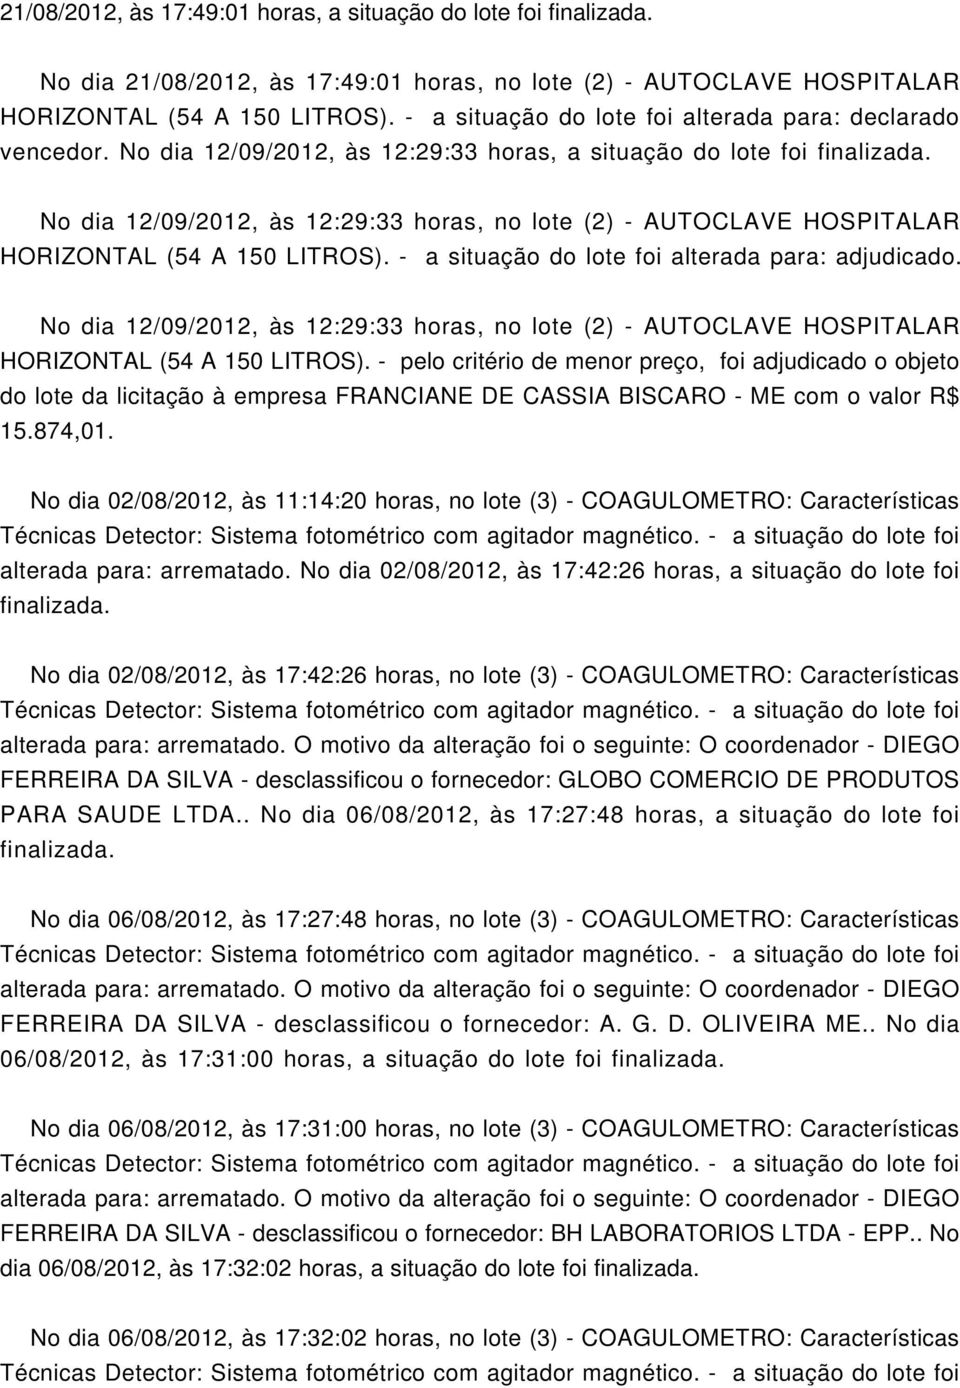 No dia 12/09/2012, às 12:29:33 horas, no lote (2) - AUTOCLAVE HOSPITALAR HORIZONTAL (54 A 150 LITROS). - a situação do lote foi alterada para: adjudicado.